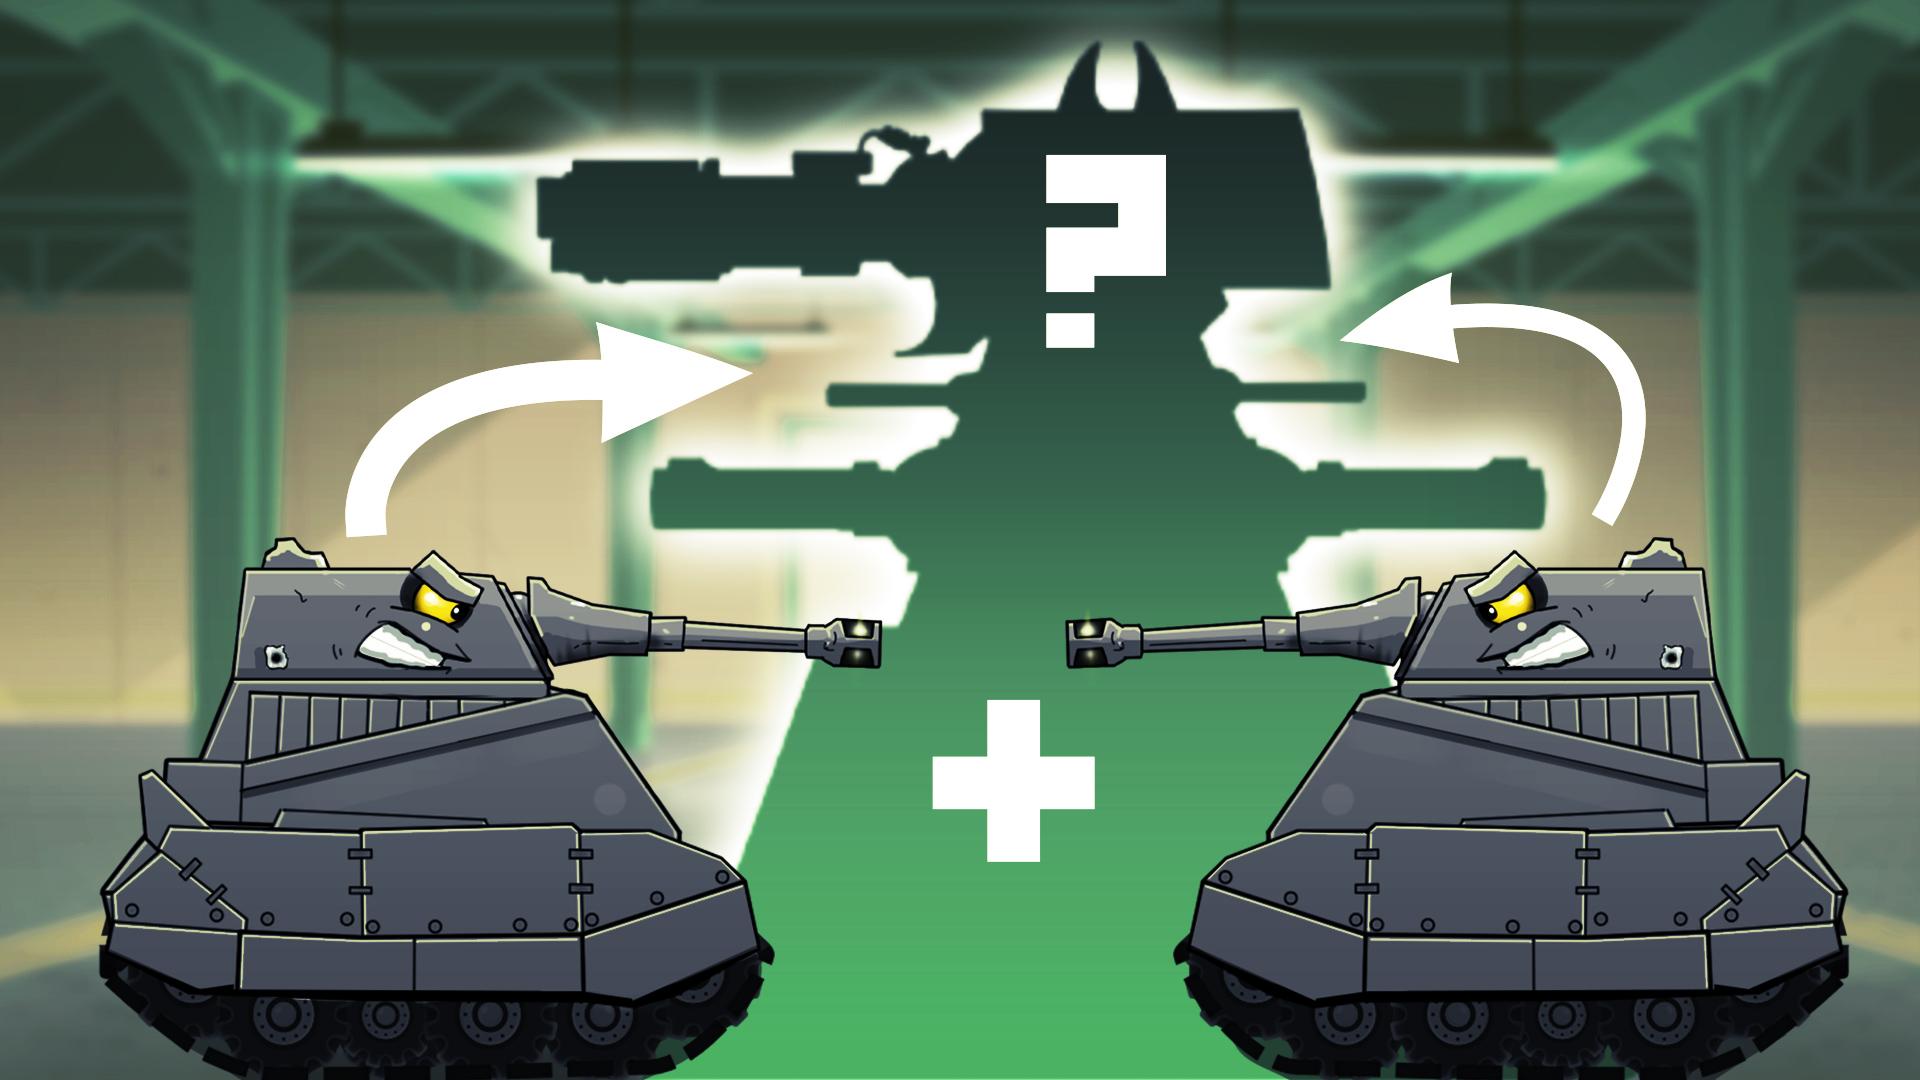 Танчики против. Танки vs танчики merge Tanks. Merge Tanks 2. Геранд.